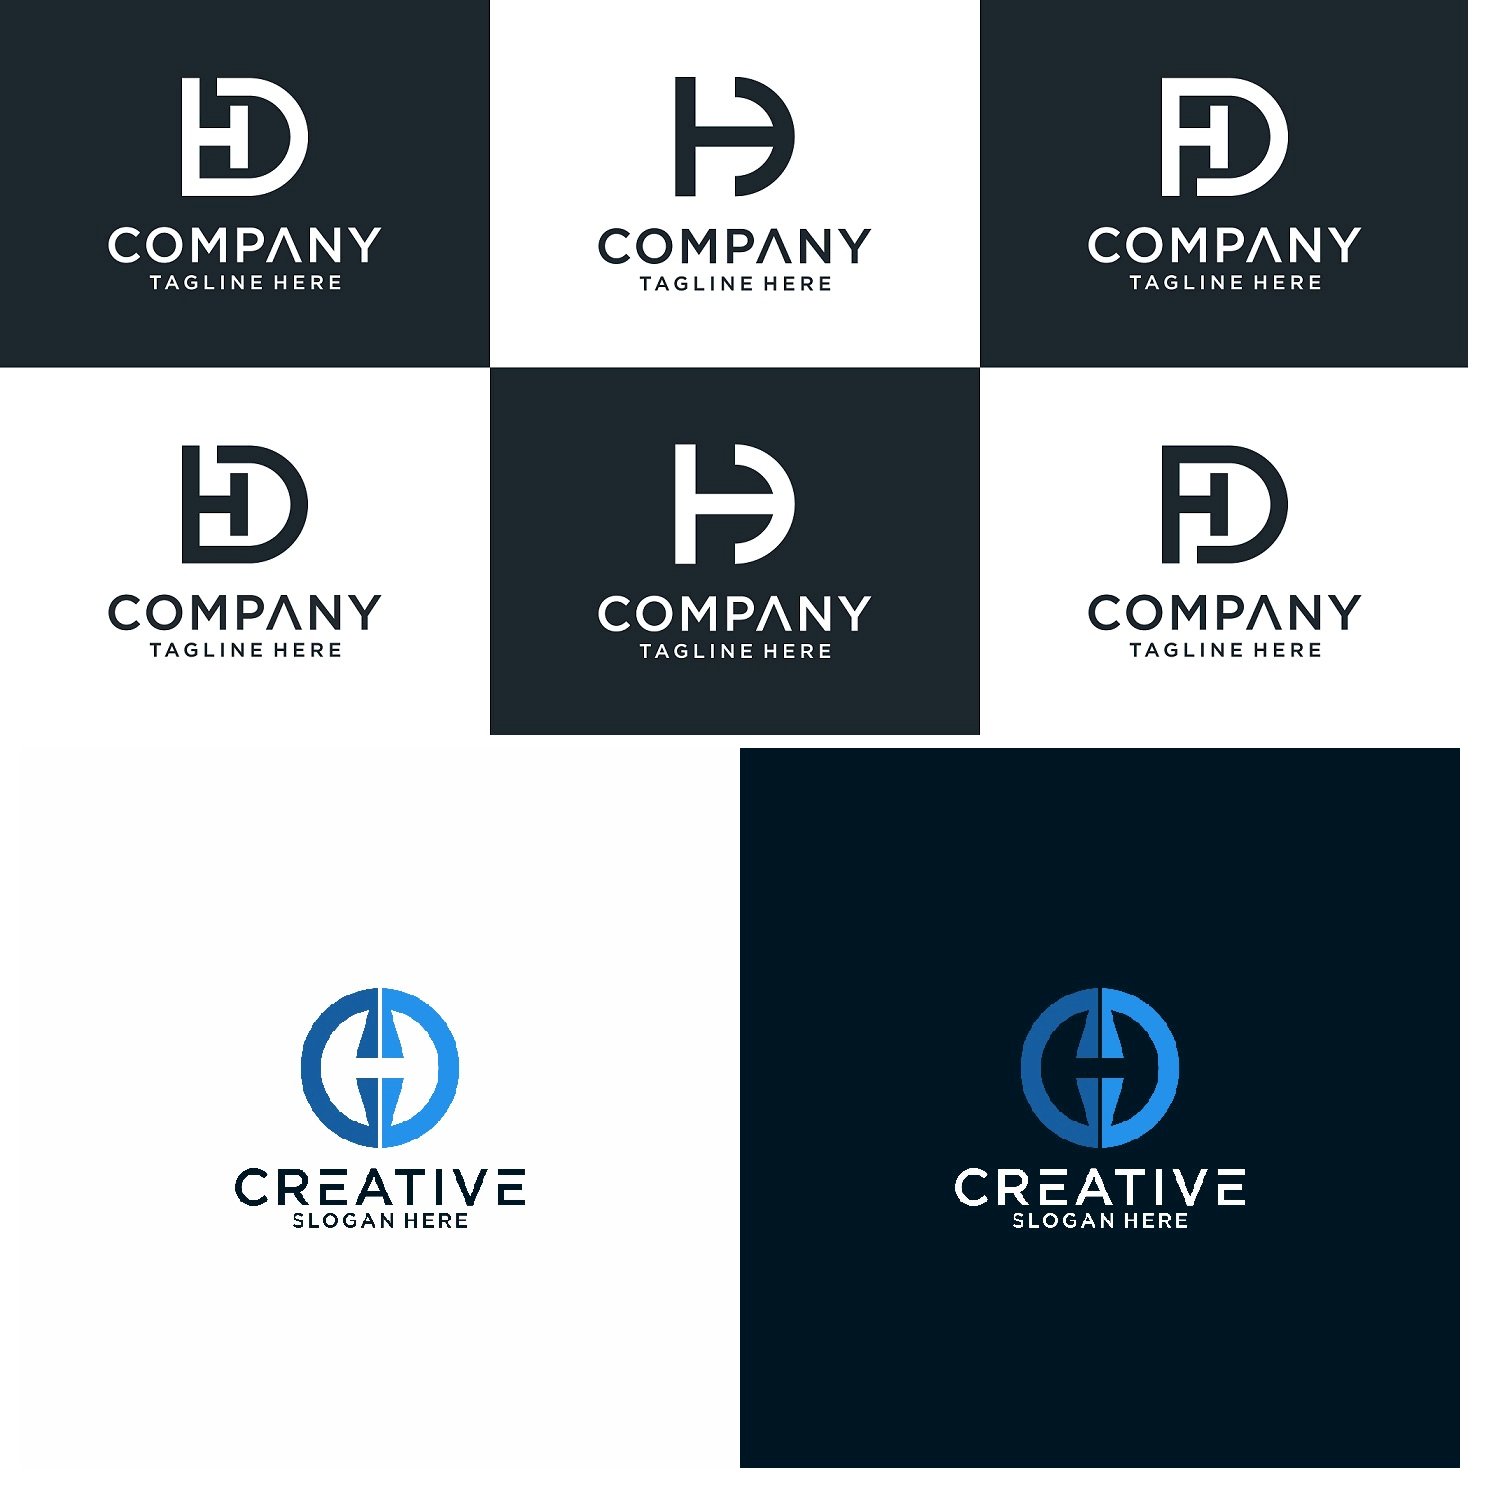 Tải logo HD Vector, AI, EPS, SVG, PNG, mẫu logo chữ HD đẹp, cách ...